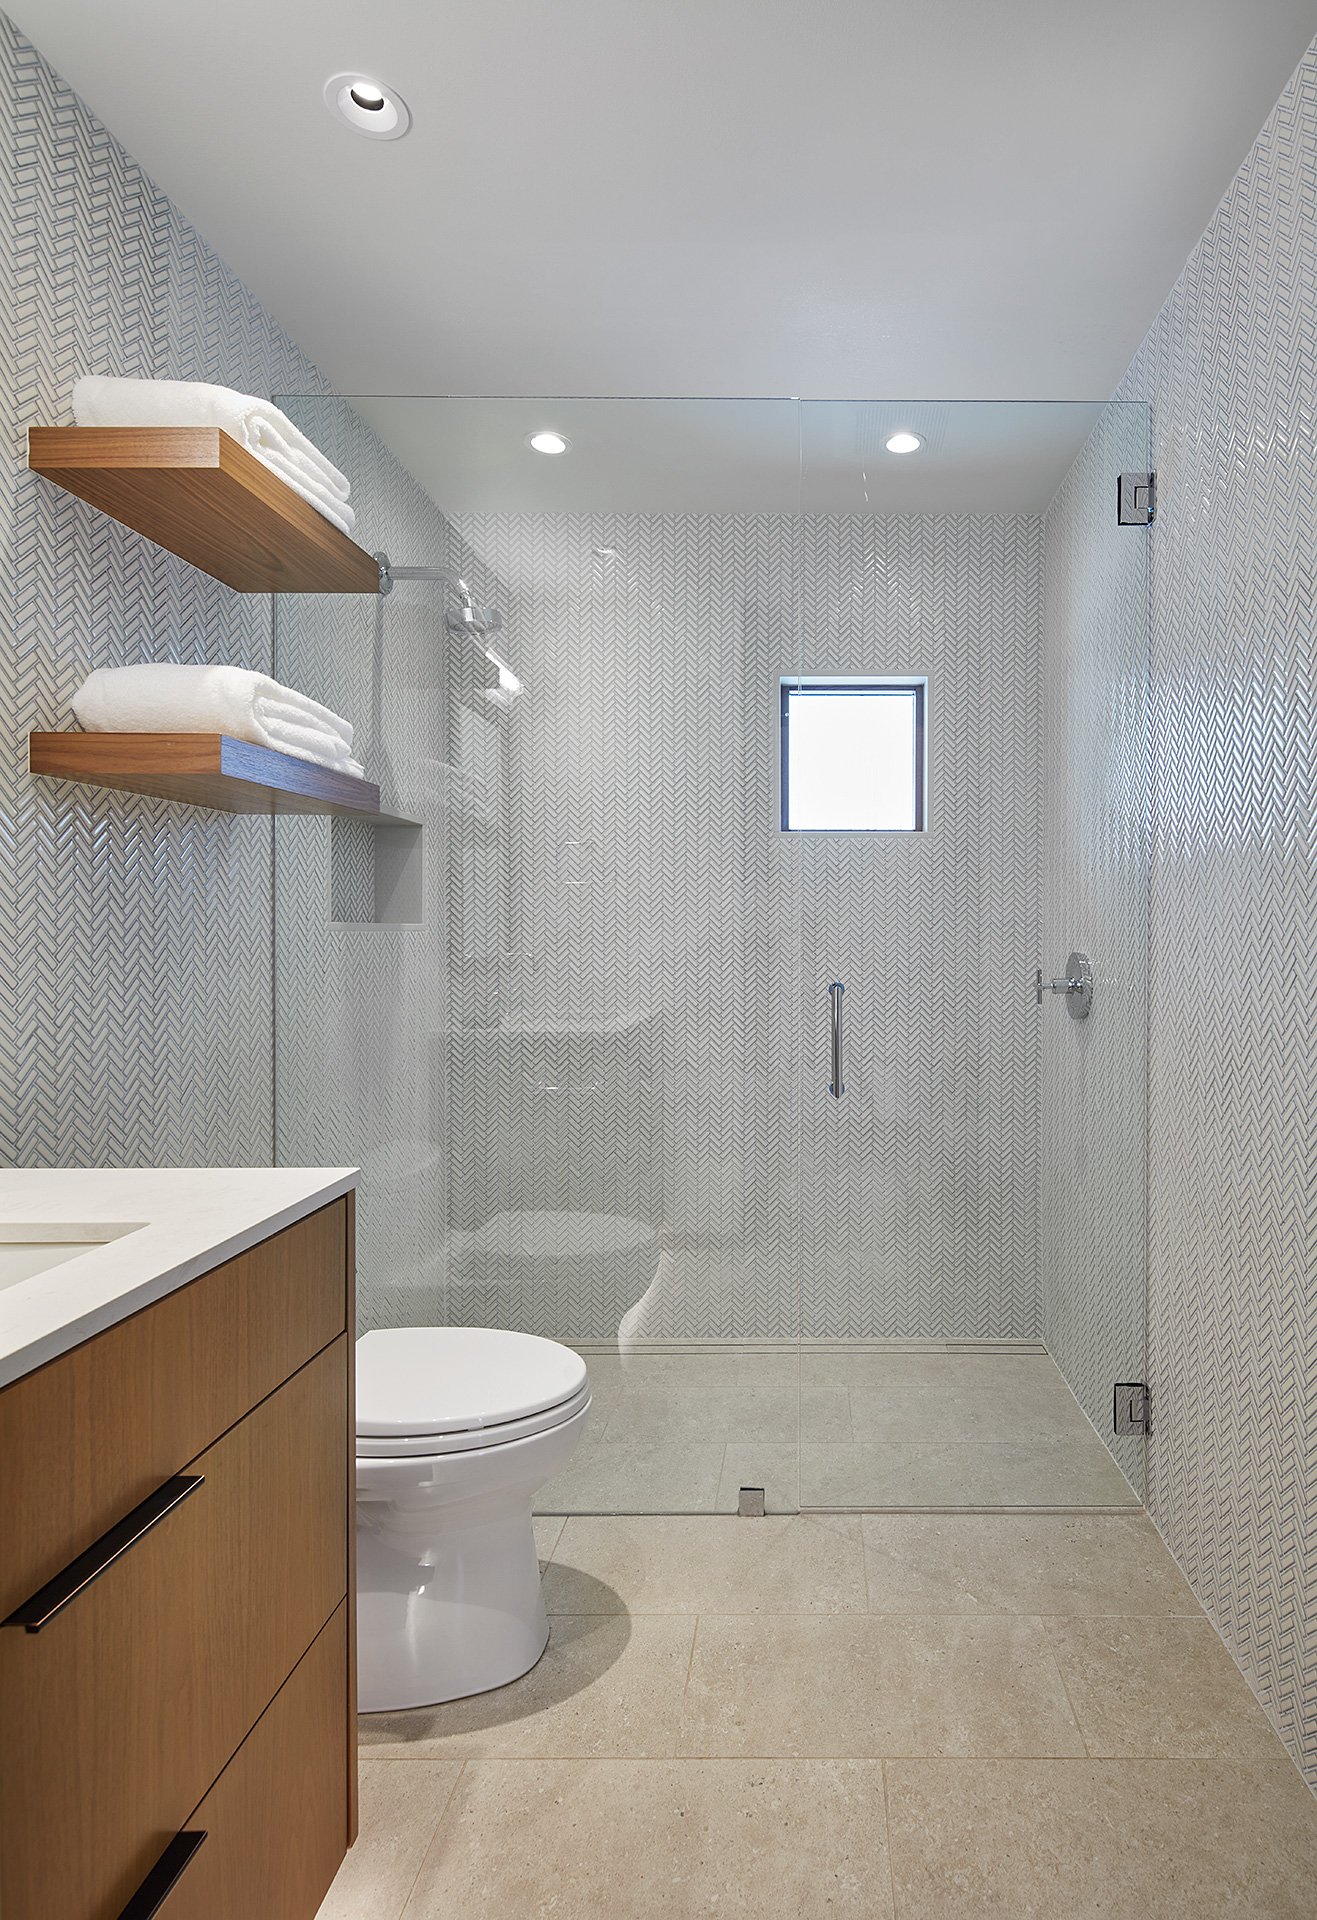 Bathroom with white herringbone tile